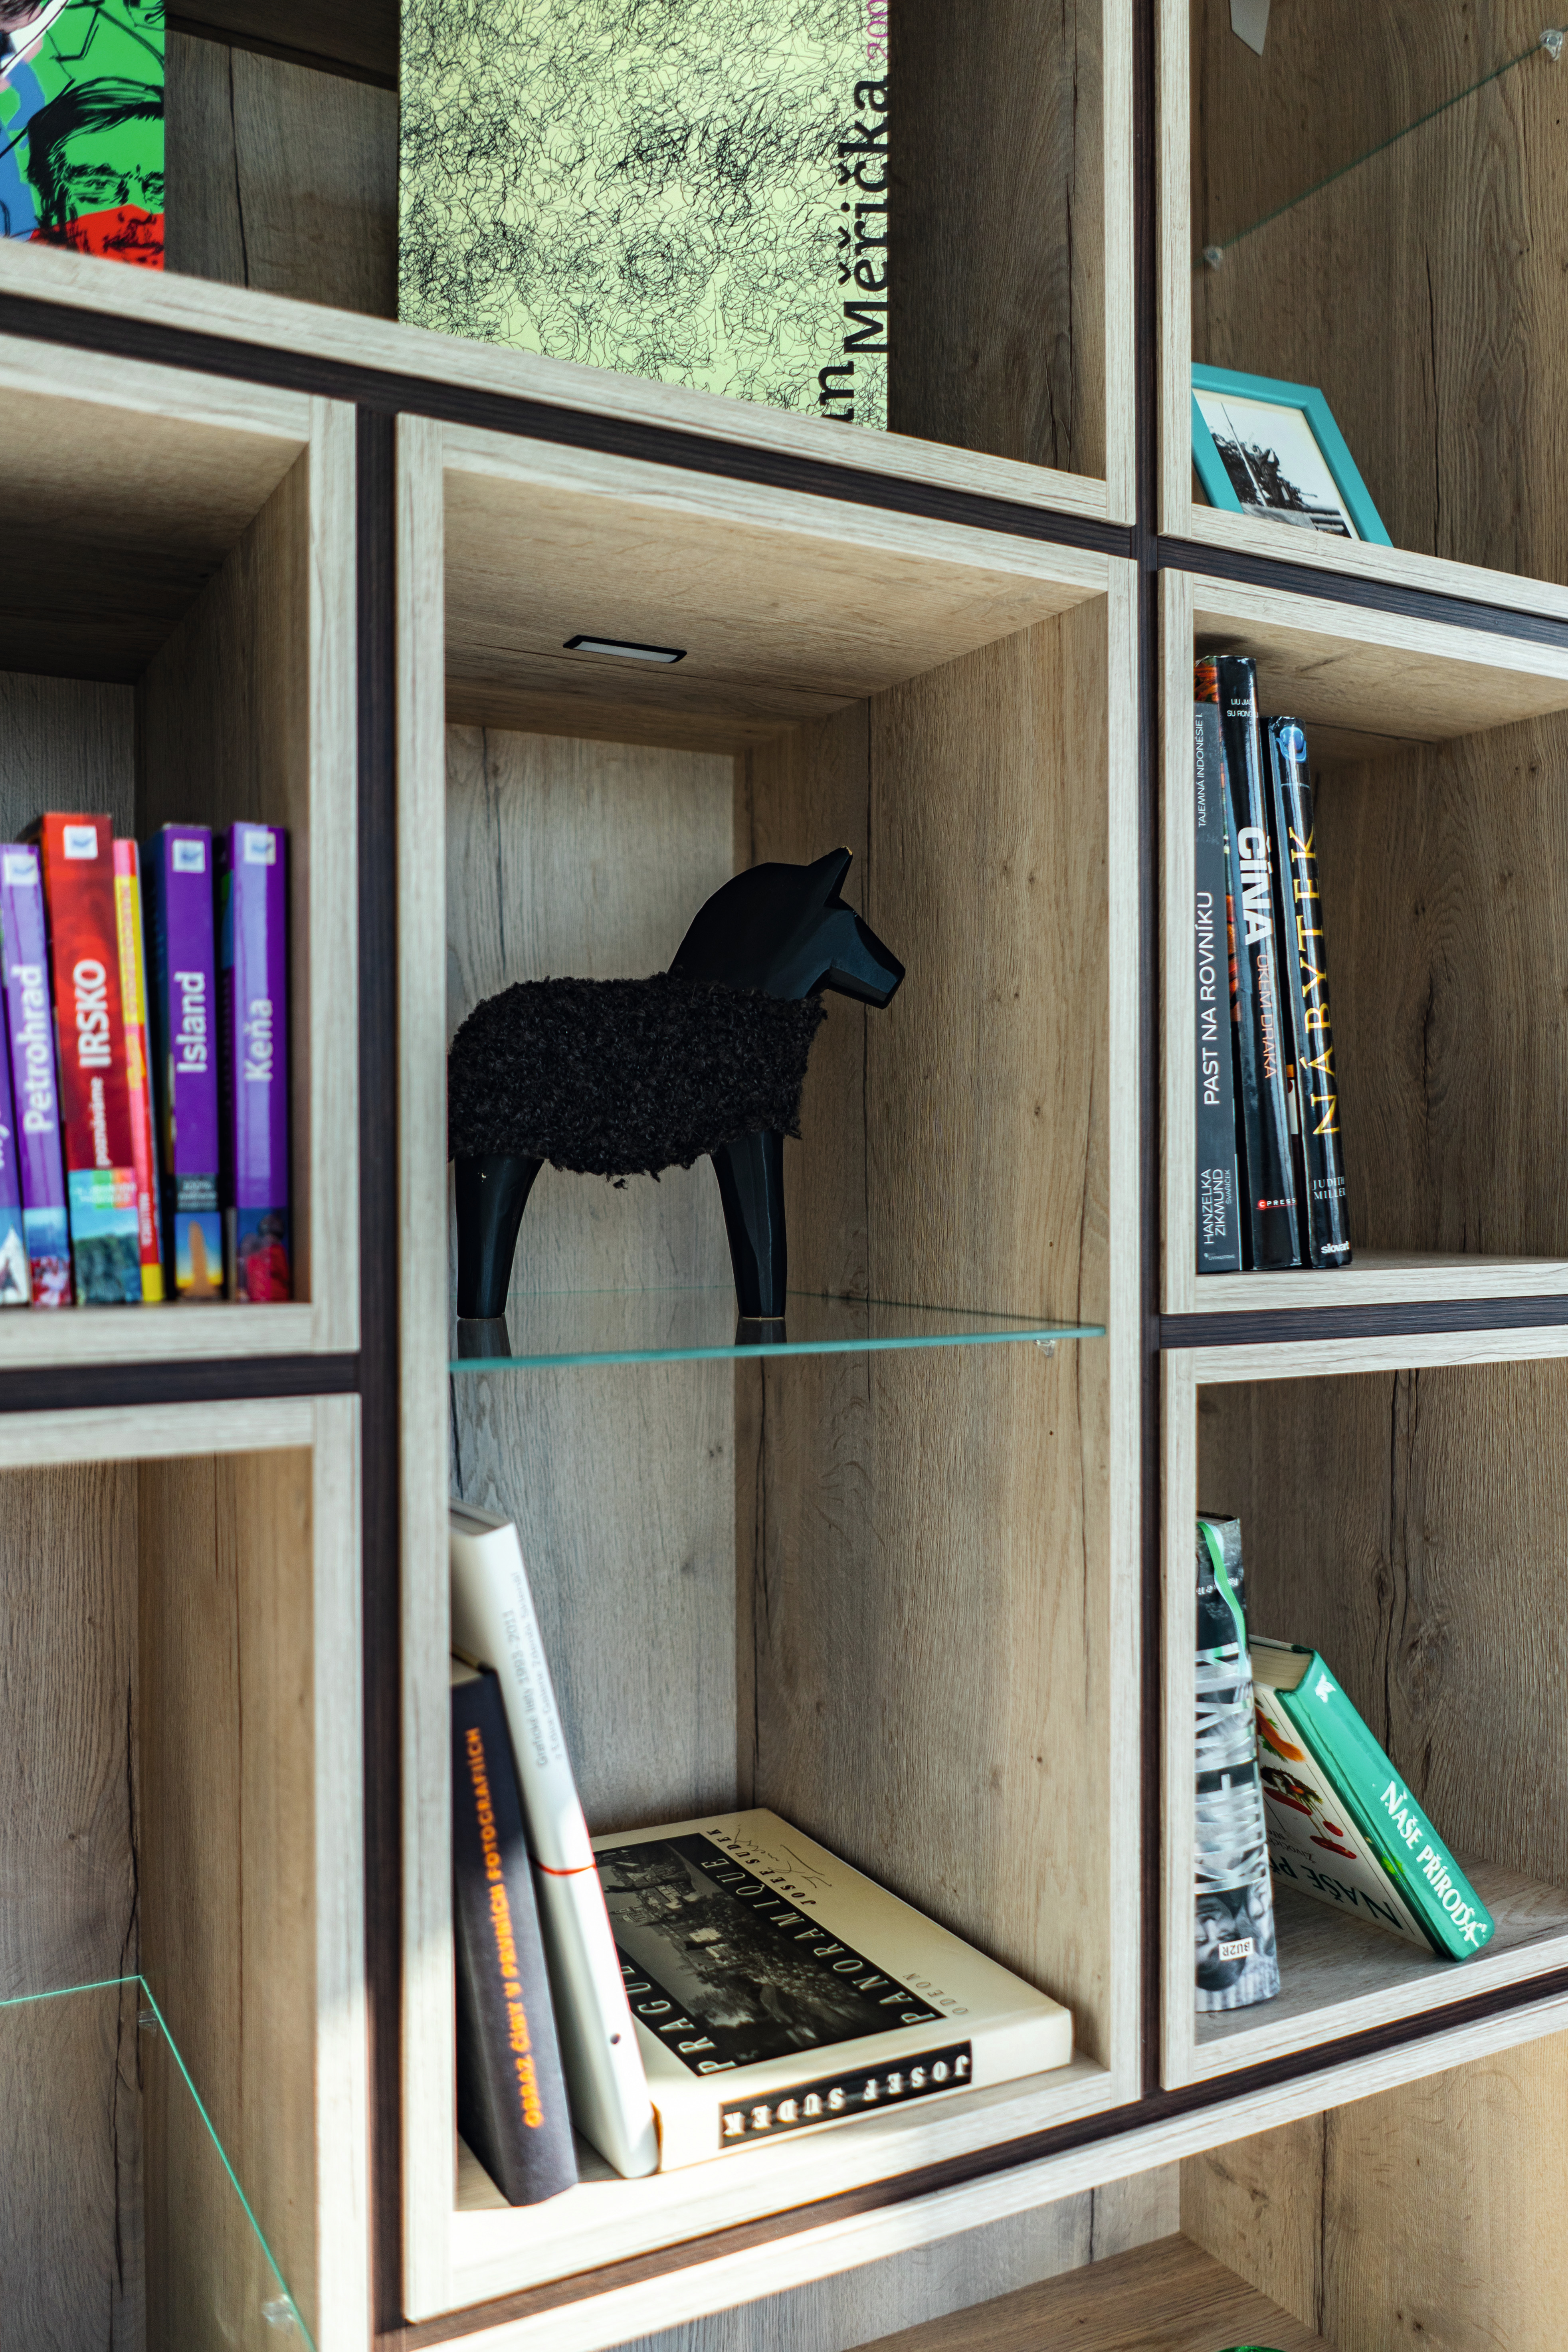  Книжный шкаф выполнен в сочетании светлого декора Дуб Галифакс и темной древесной репродукции и удобен для размещения самых разных вещей.